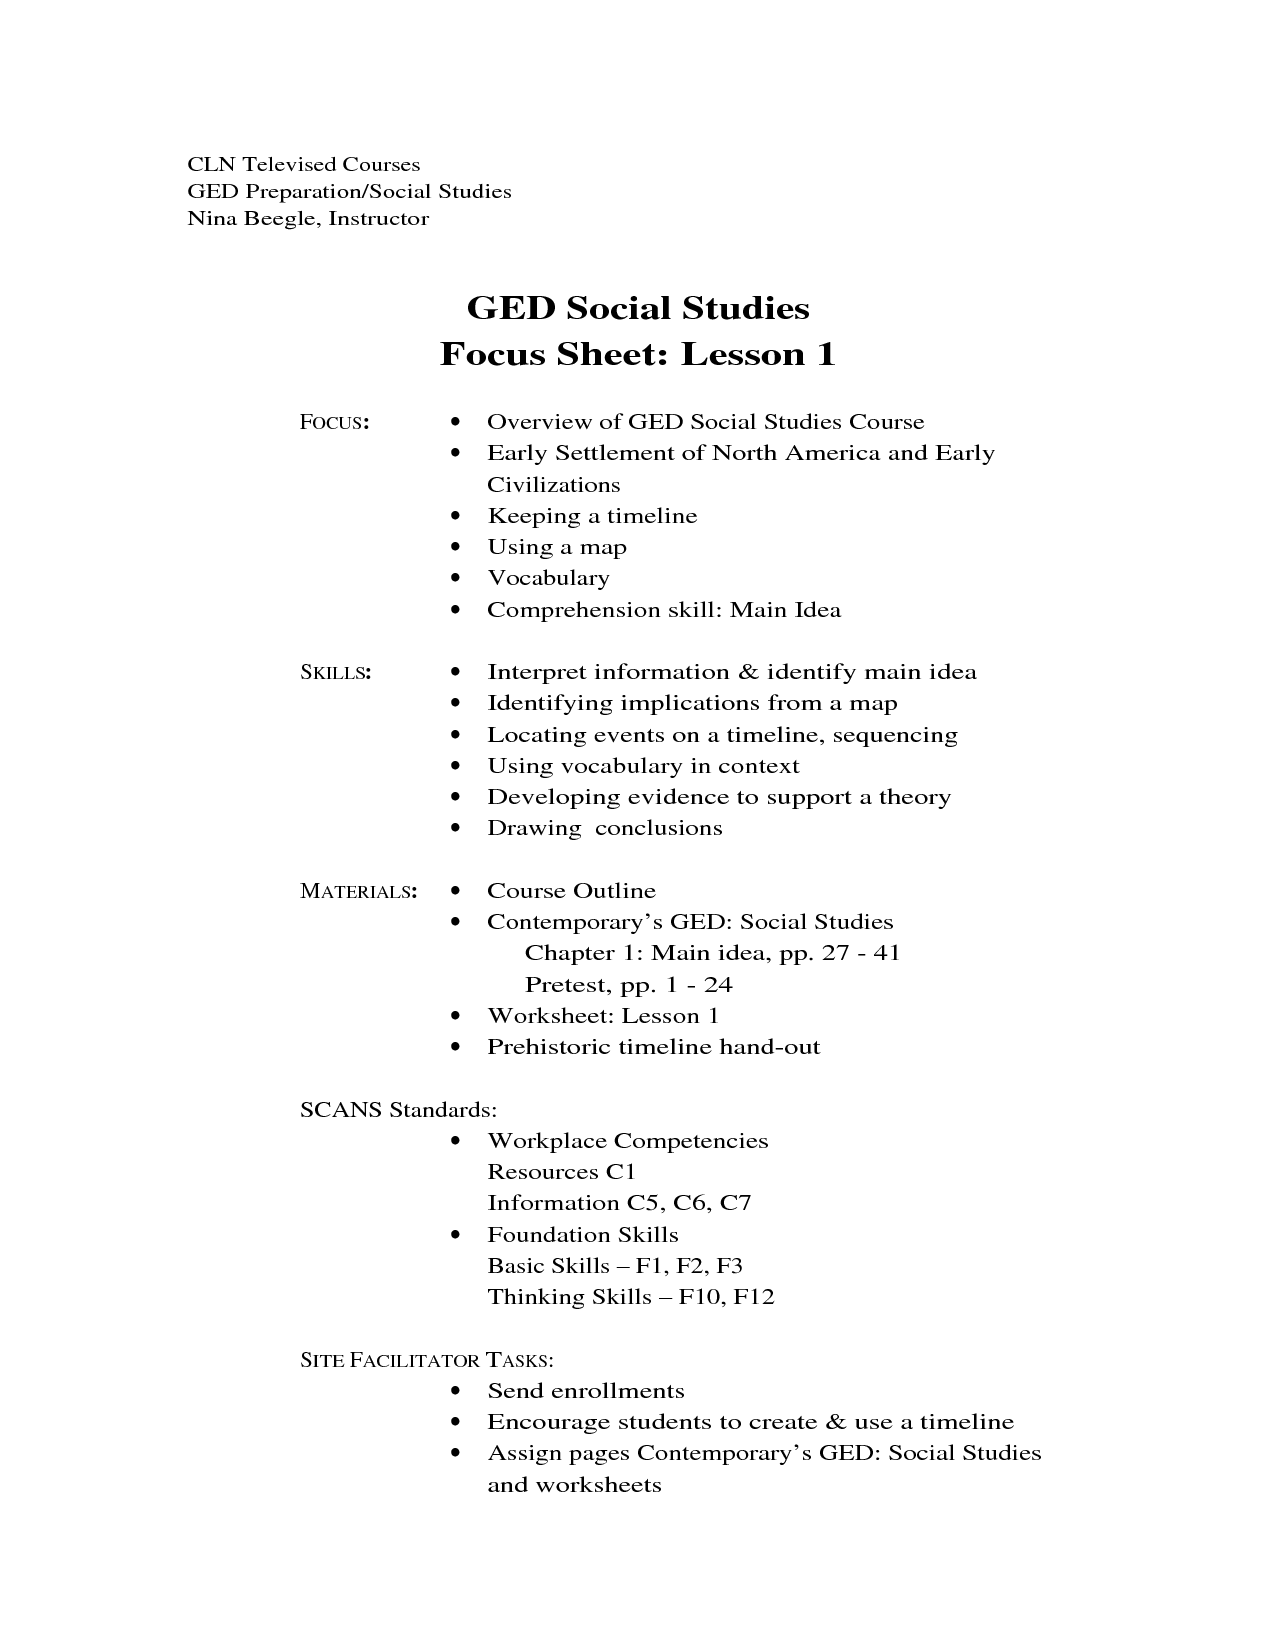 GED Social Studies Worksheets Image